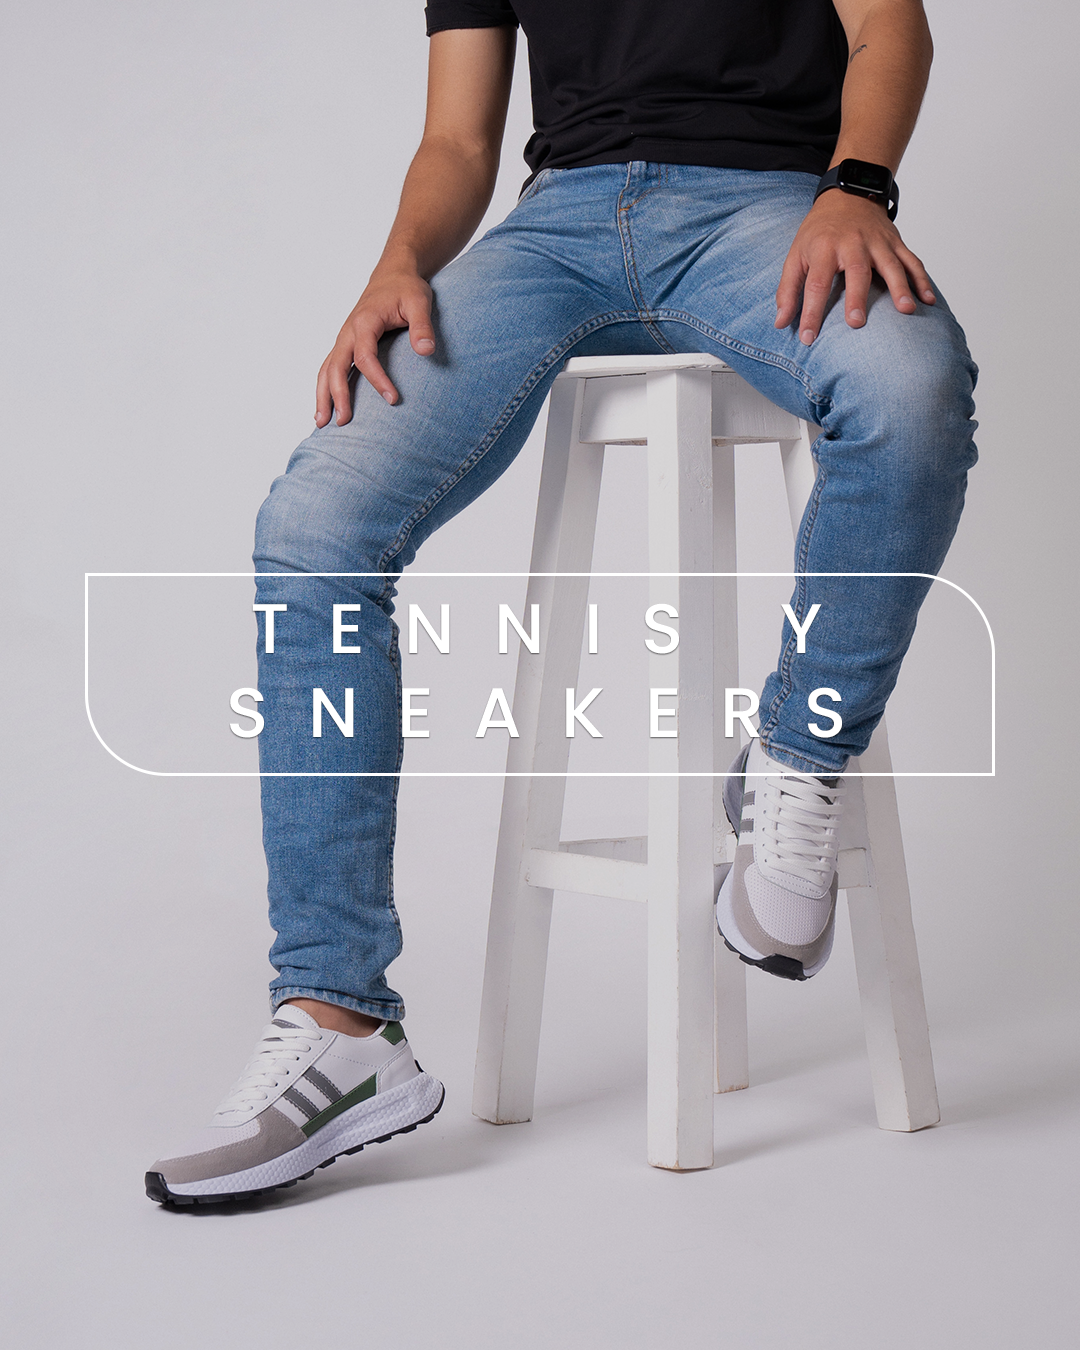 C-tennisysneakers_2.png